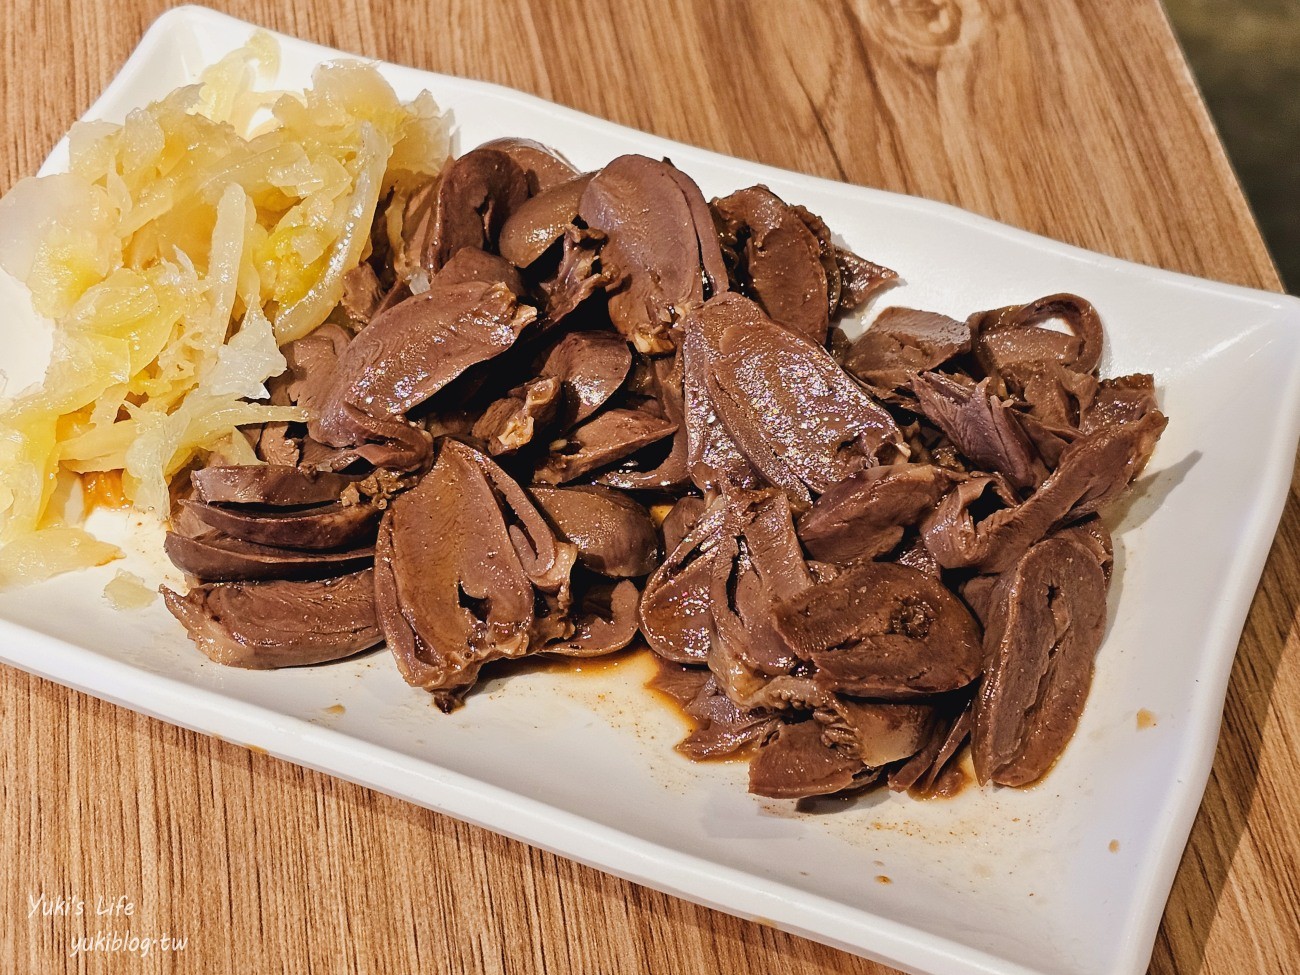 台北美食》阿城鵝肉土城總店，米其林推薦，油嫩肉質吃過就回不去 - yukiblog.tw